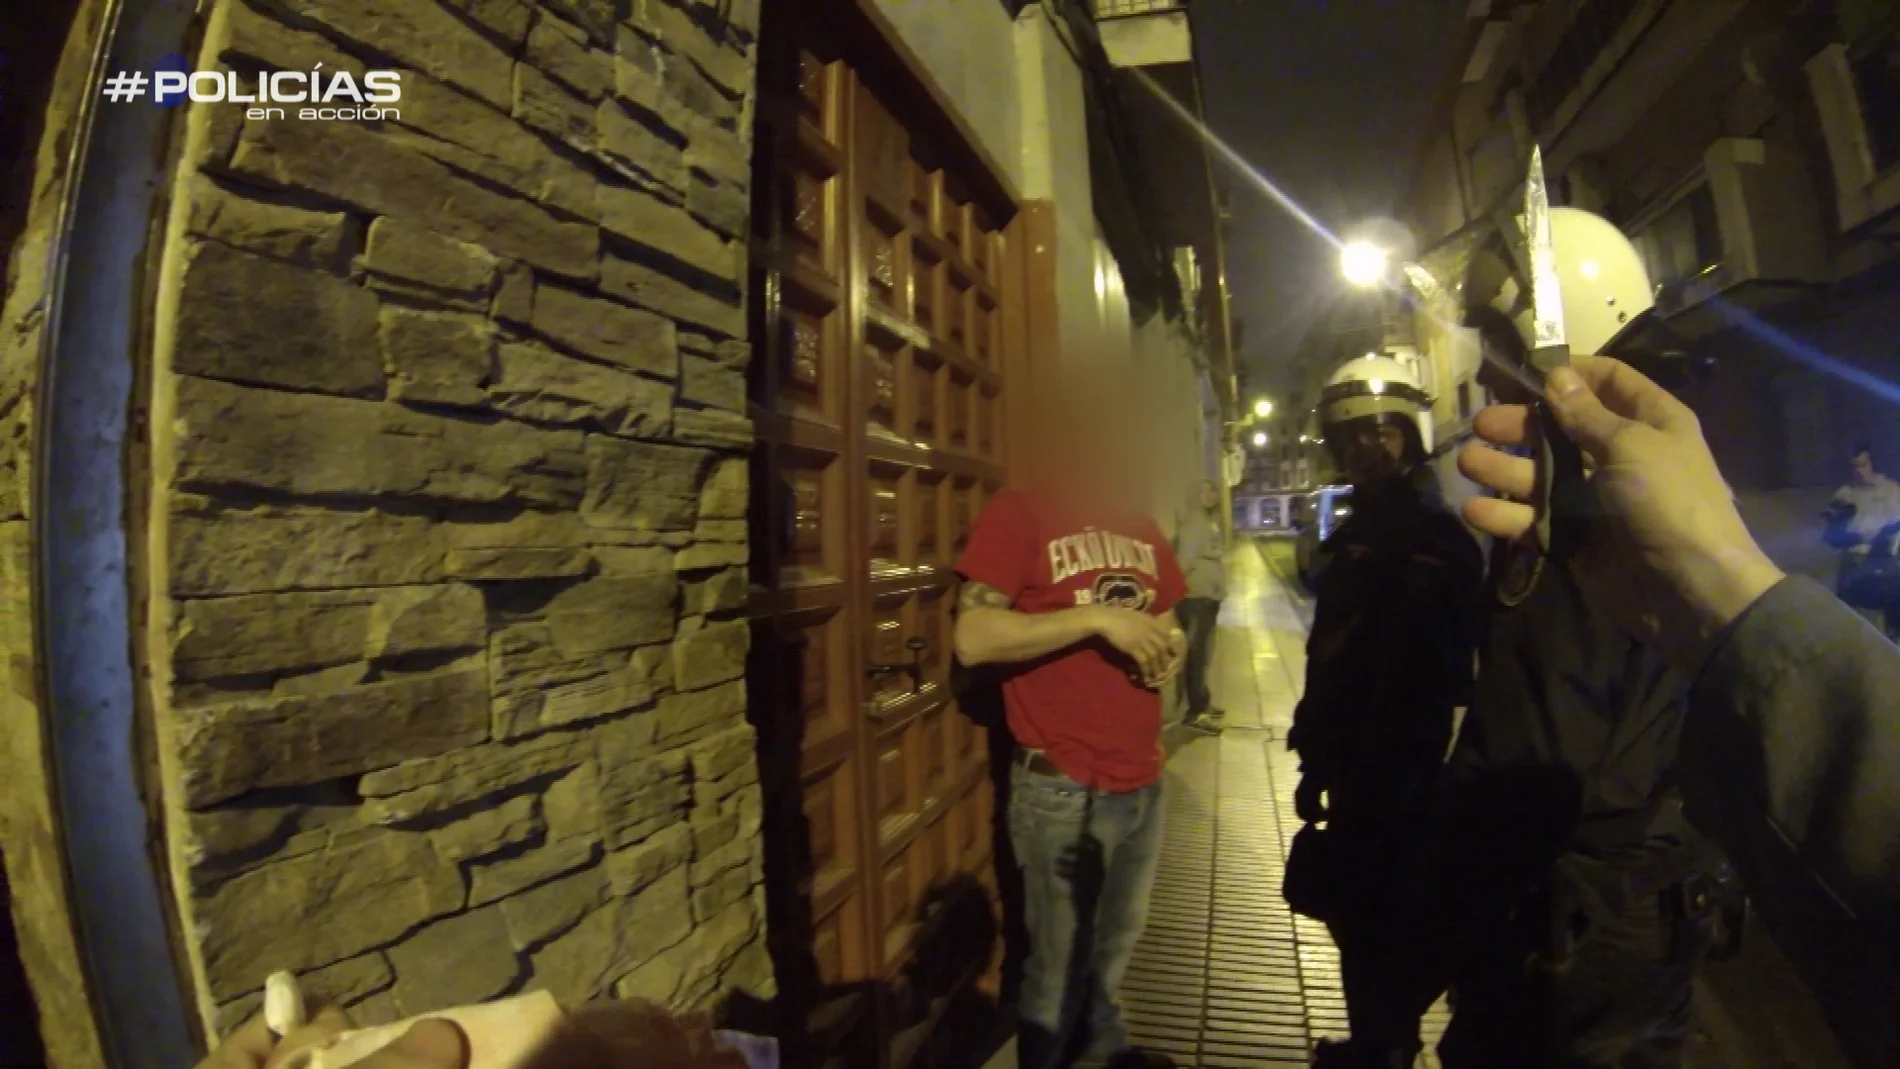 'Policías en acción' registran un local y dan con drogas ilegales:  "Cocaína, pastillas..."